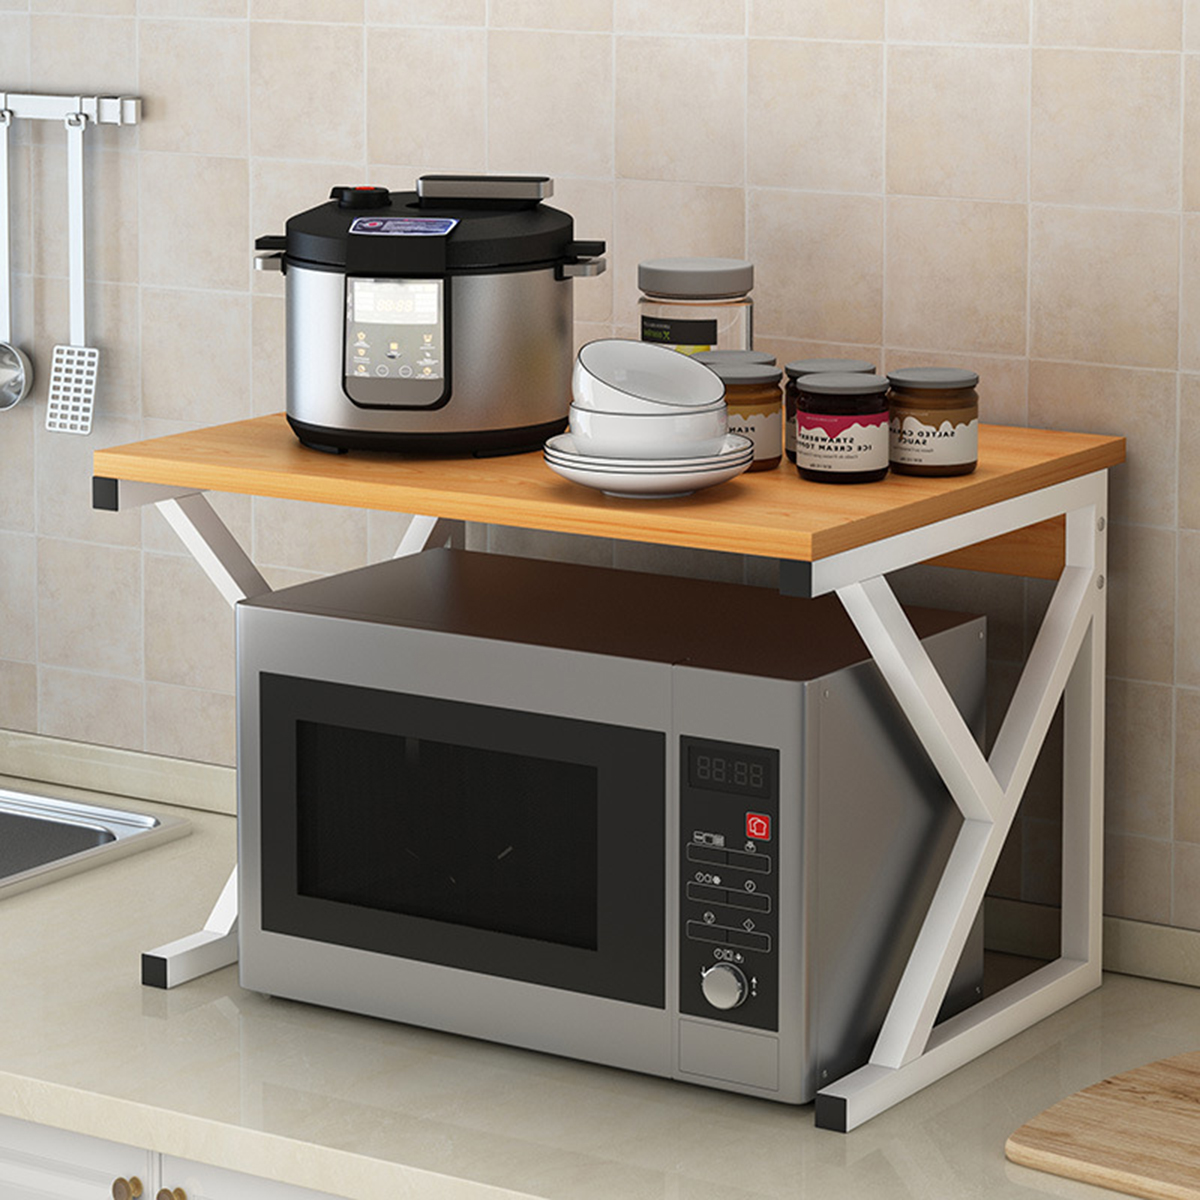 Microwave Oven Rack Kitchen Baker Stand Storage Shelf Kitchen Desktop Space Saving Organizer 58